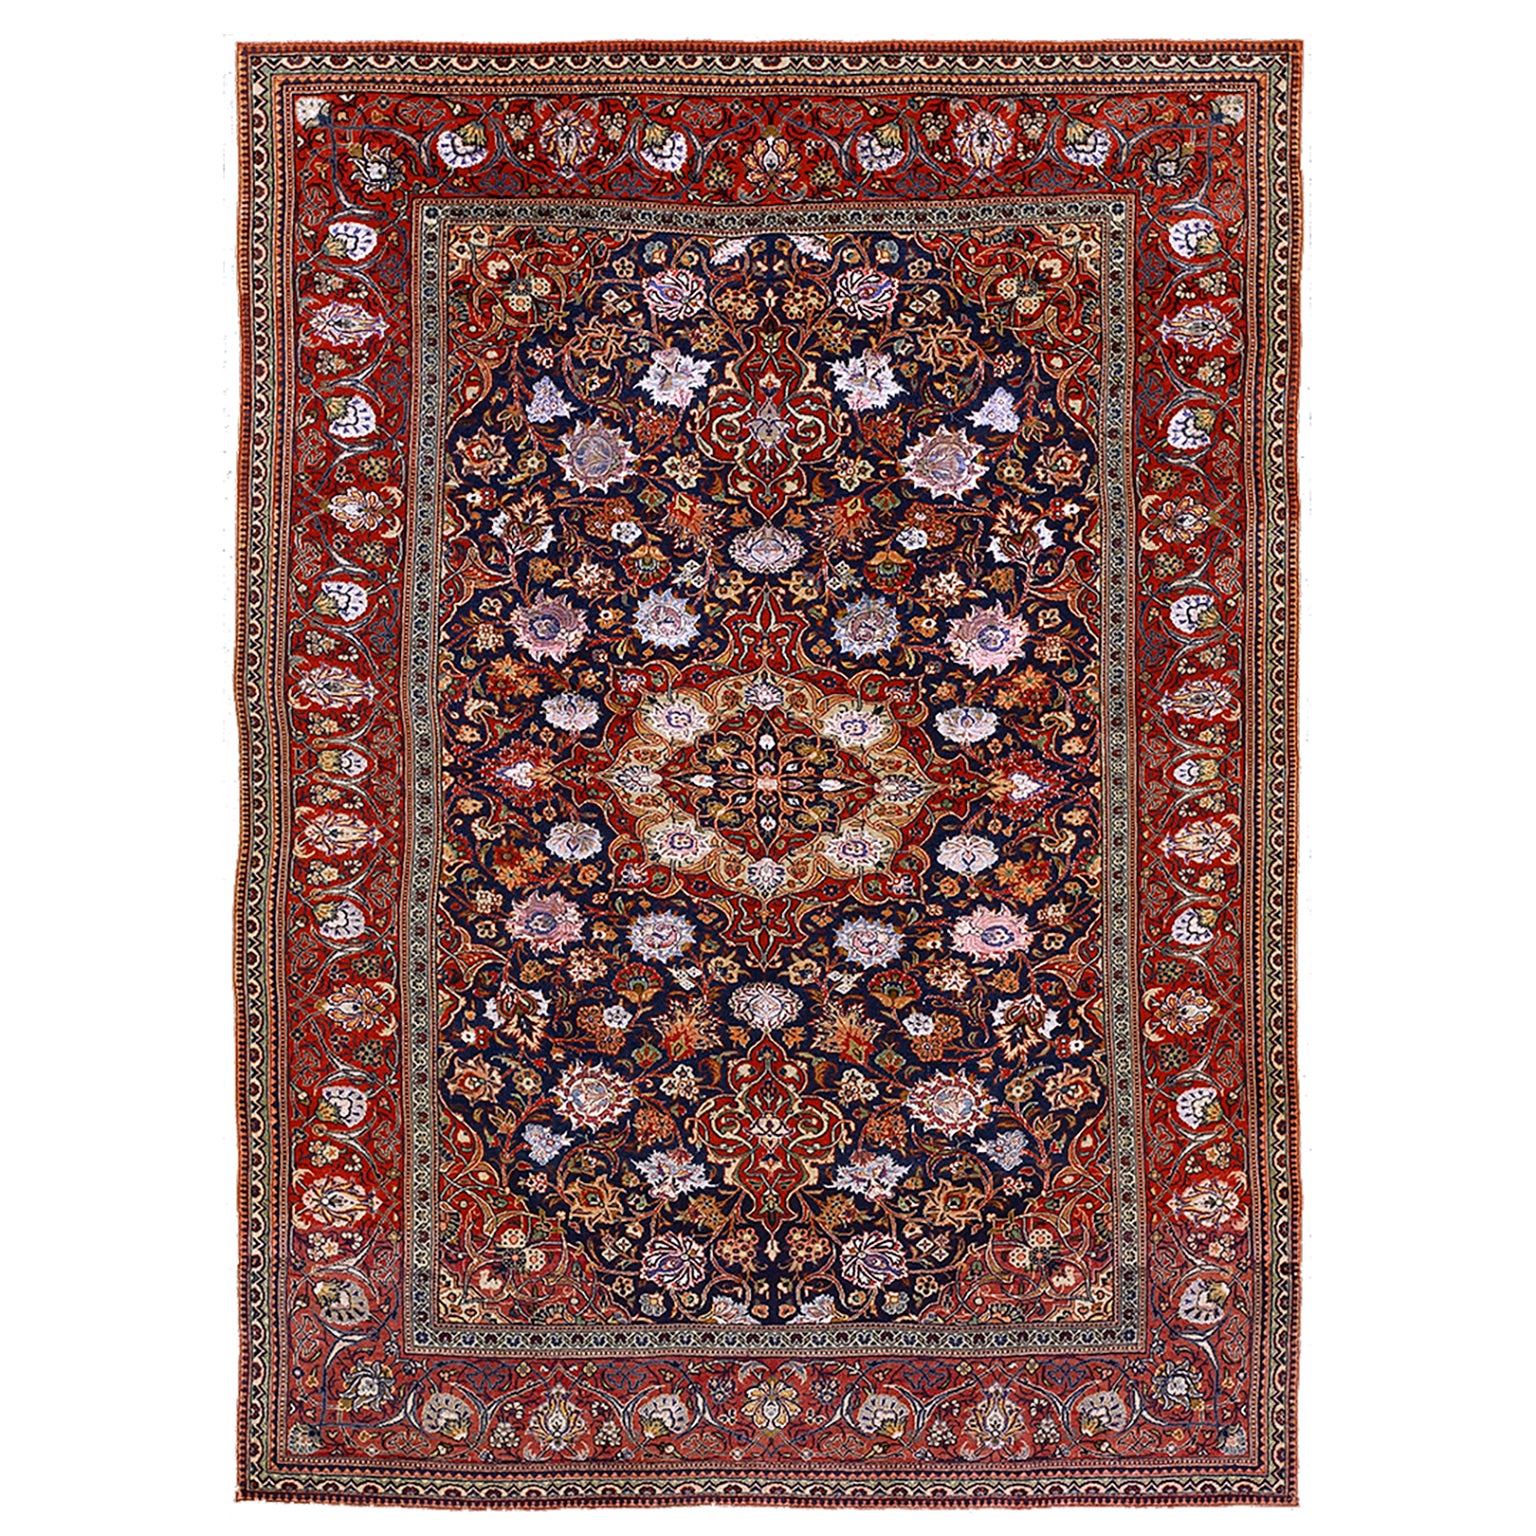 Persischer Kashan-Teppich aus Seide und Wolle aus dem frühen 20. Jahrhundert ( 4'4" x 6'6' - 132 x 198 )